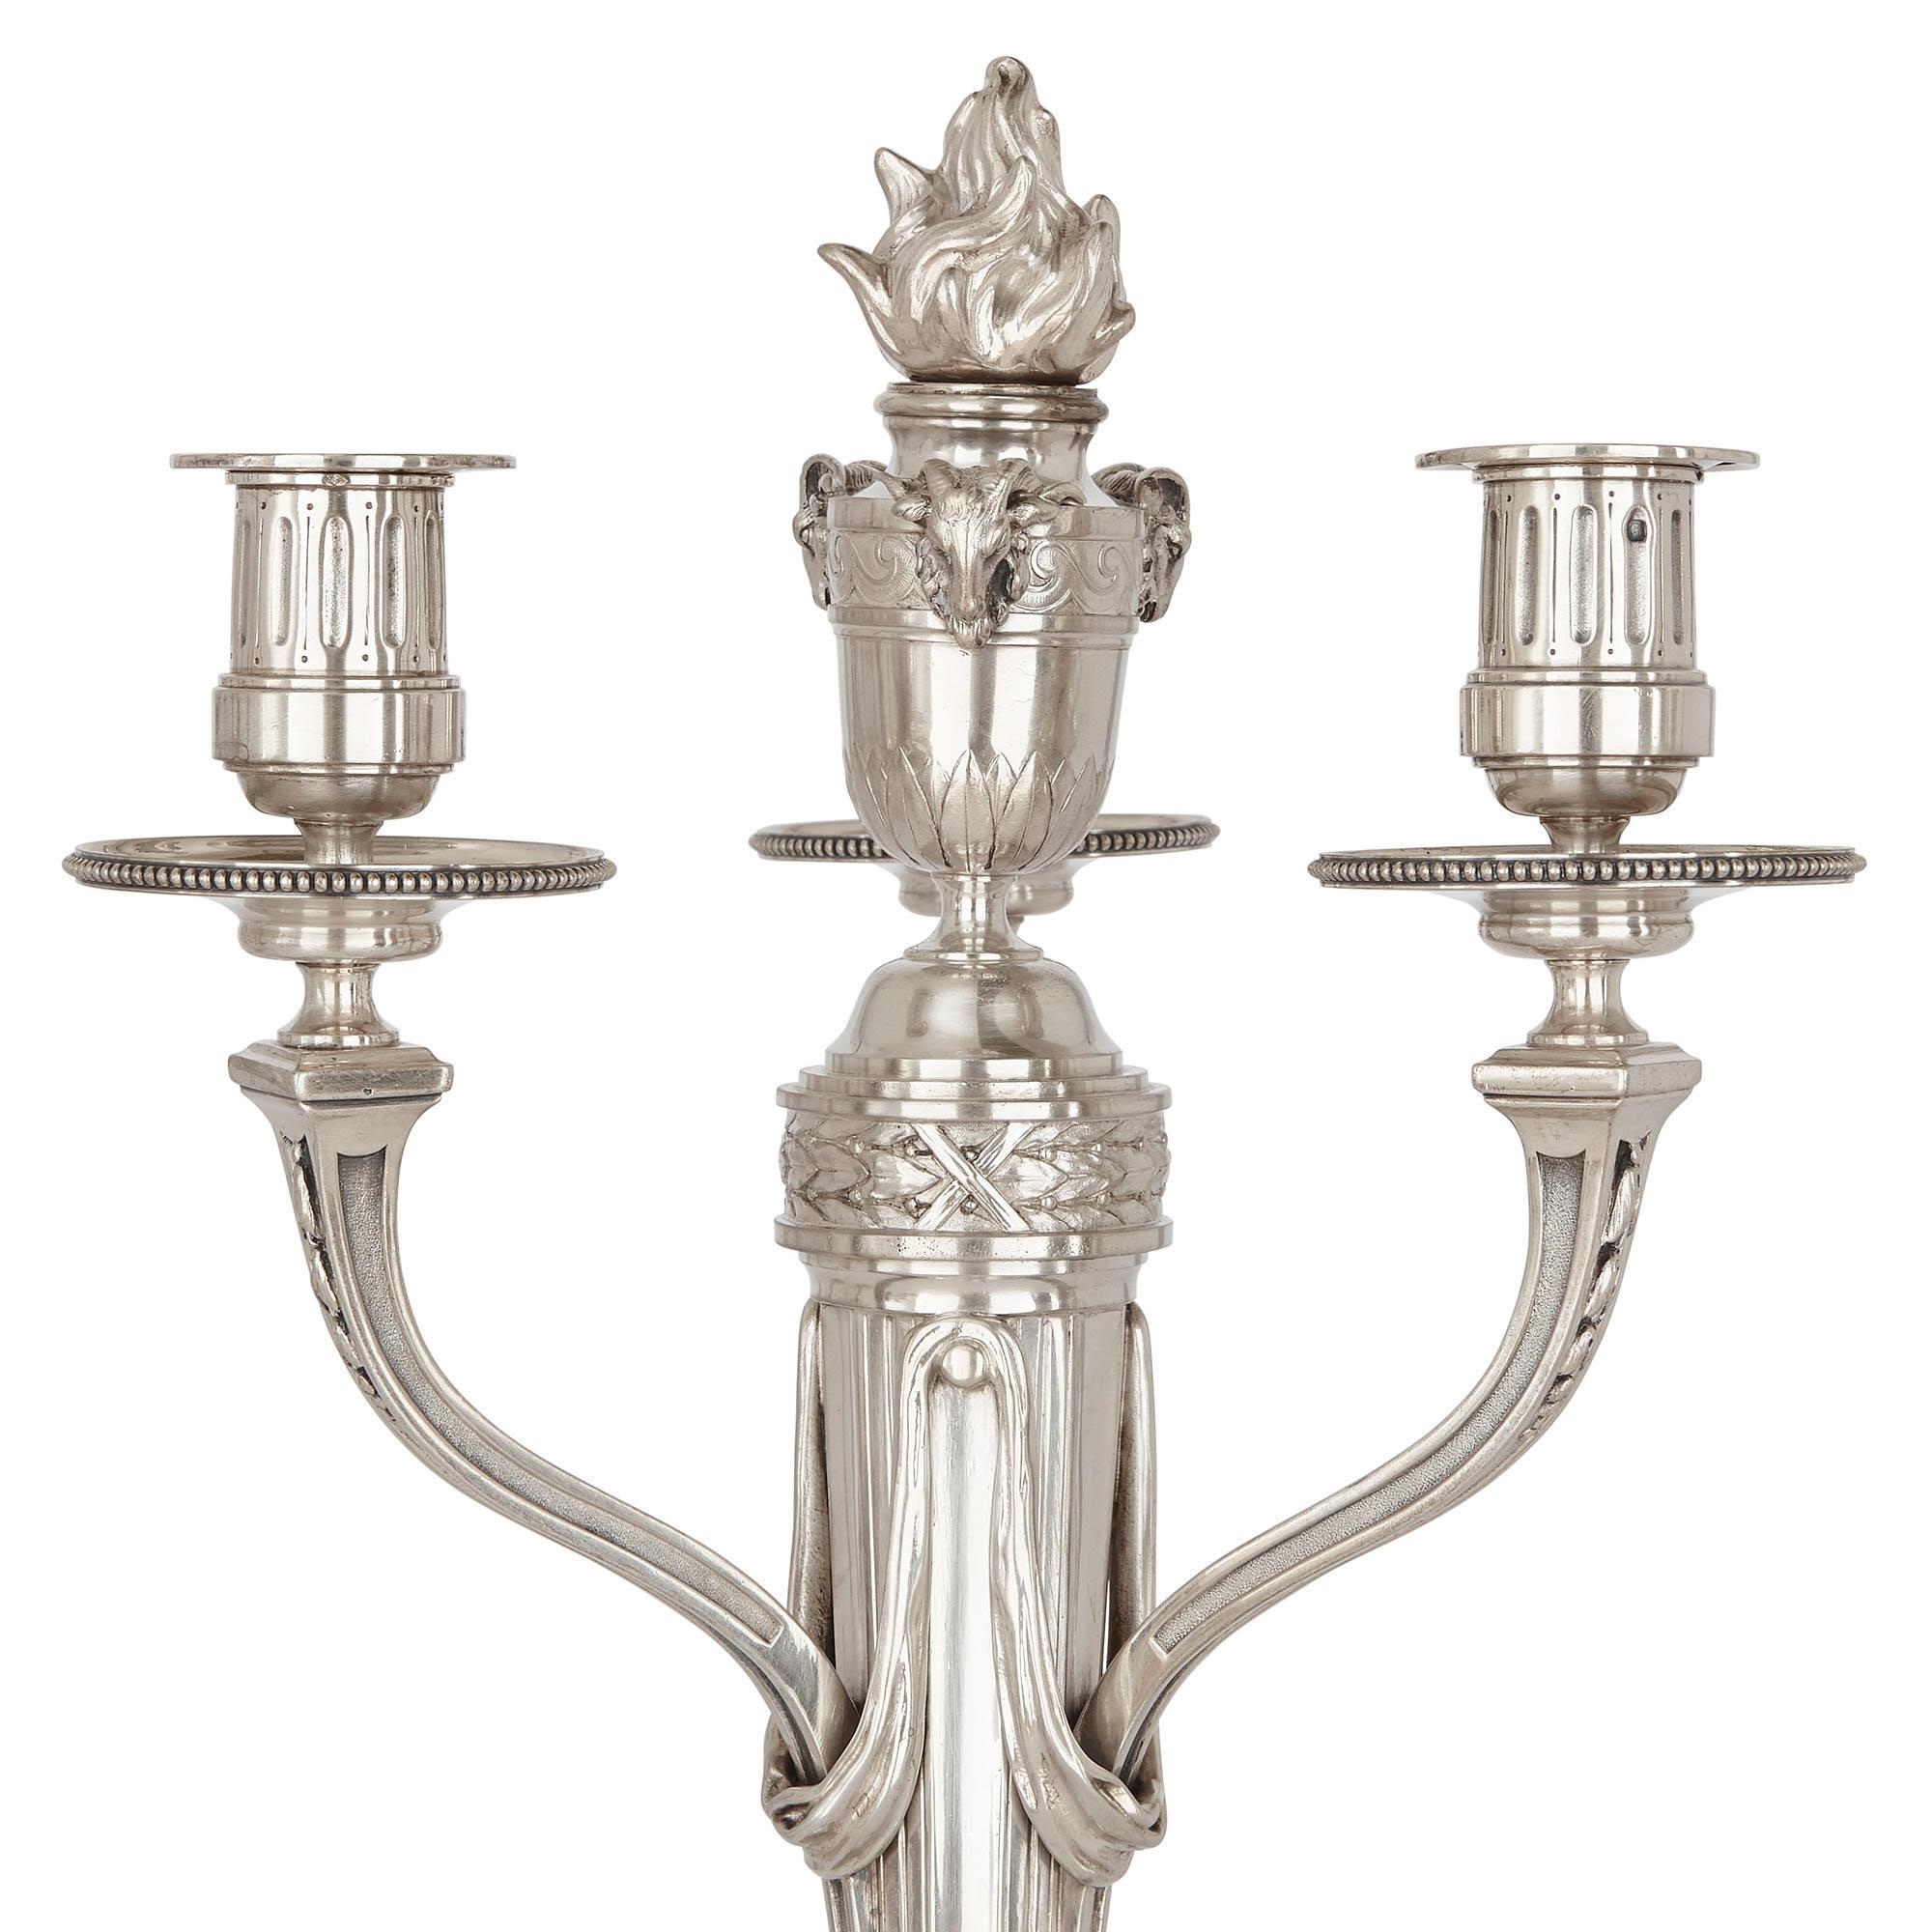 Ce magnifique ensemble de quatre chandeliers a été fabriqué vers 1900 par André Aucoc, l'un des principaux orfèvres français de l'époque. Aucoc a hérité de son frère aîné, Louis, de la bijouterie familiale, La Maison Aucoc, à Paris. Lorsqu'il a